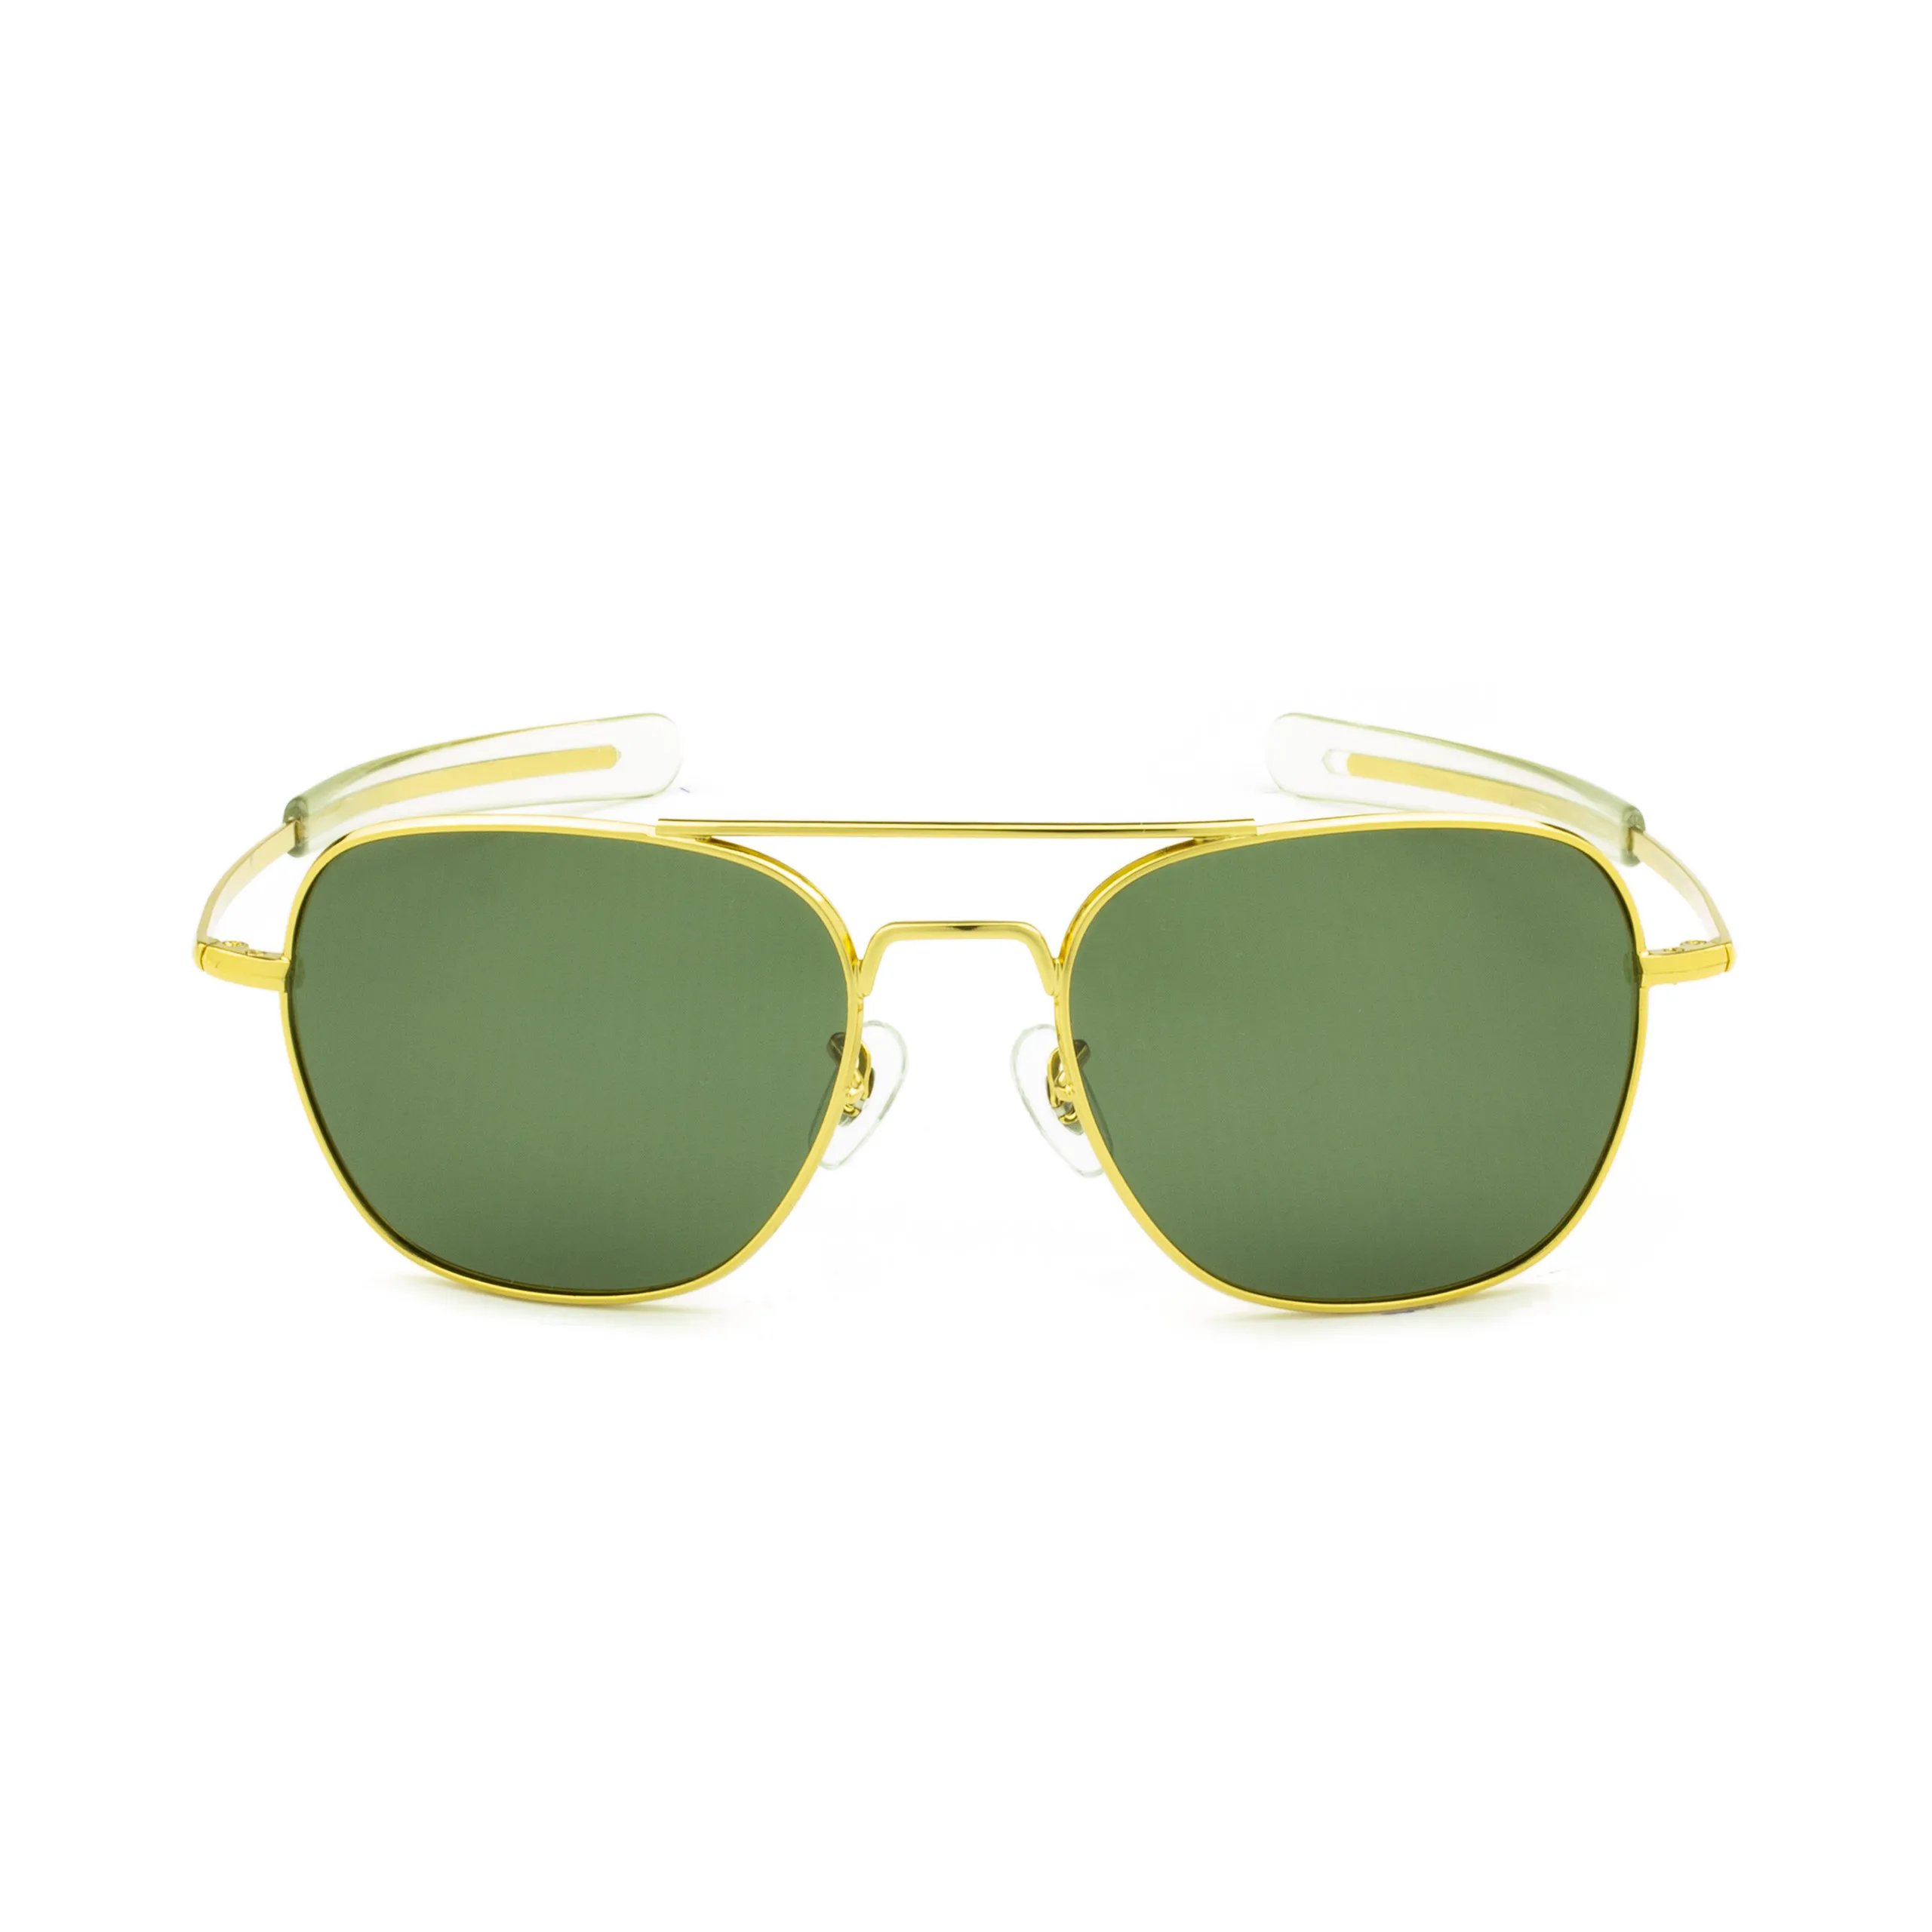 Zolo eyewear 17071 c1 золото/g15 американские поляризованные солнцезащитные очки